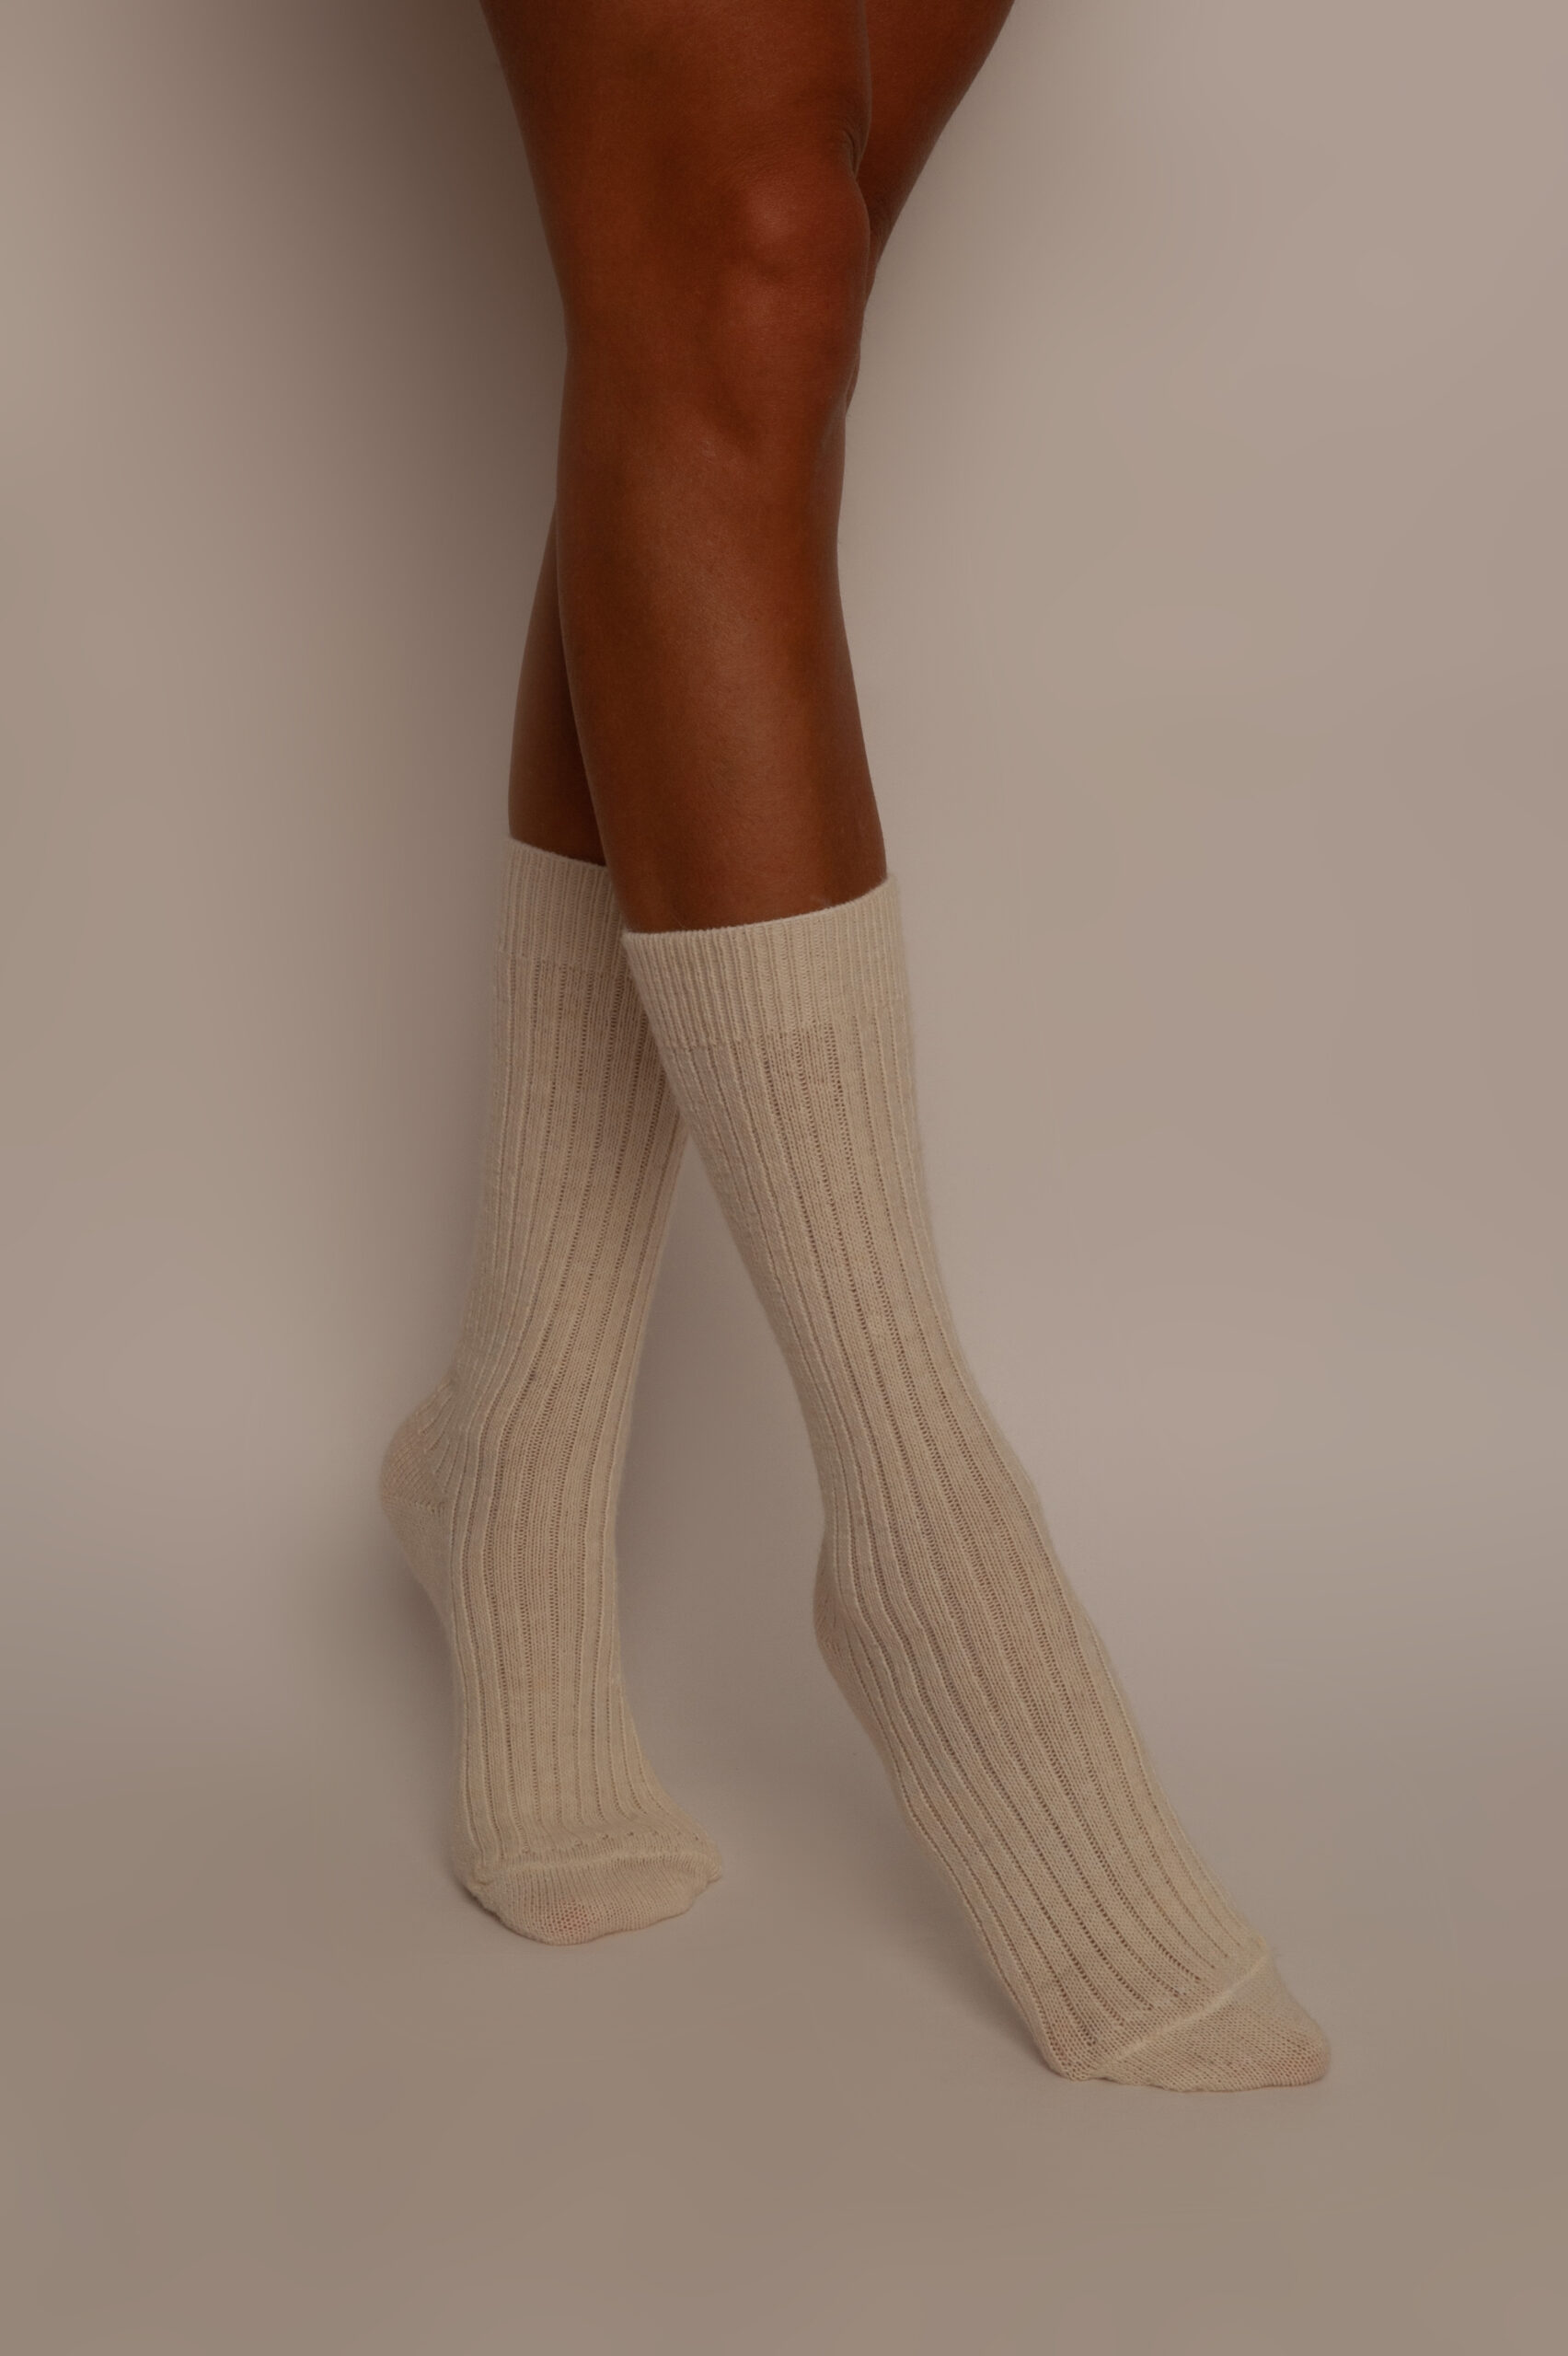 Paires chaussettes d'hiver épaisse en laine d'Alpaga motif flocon (x24) -  Grossiste France - Grossiste en ligne